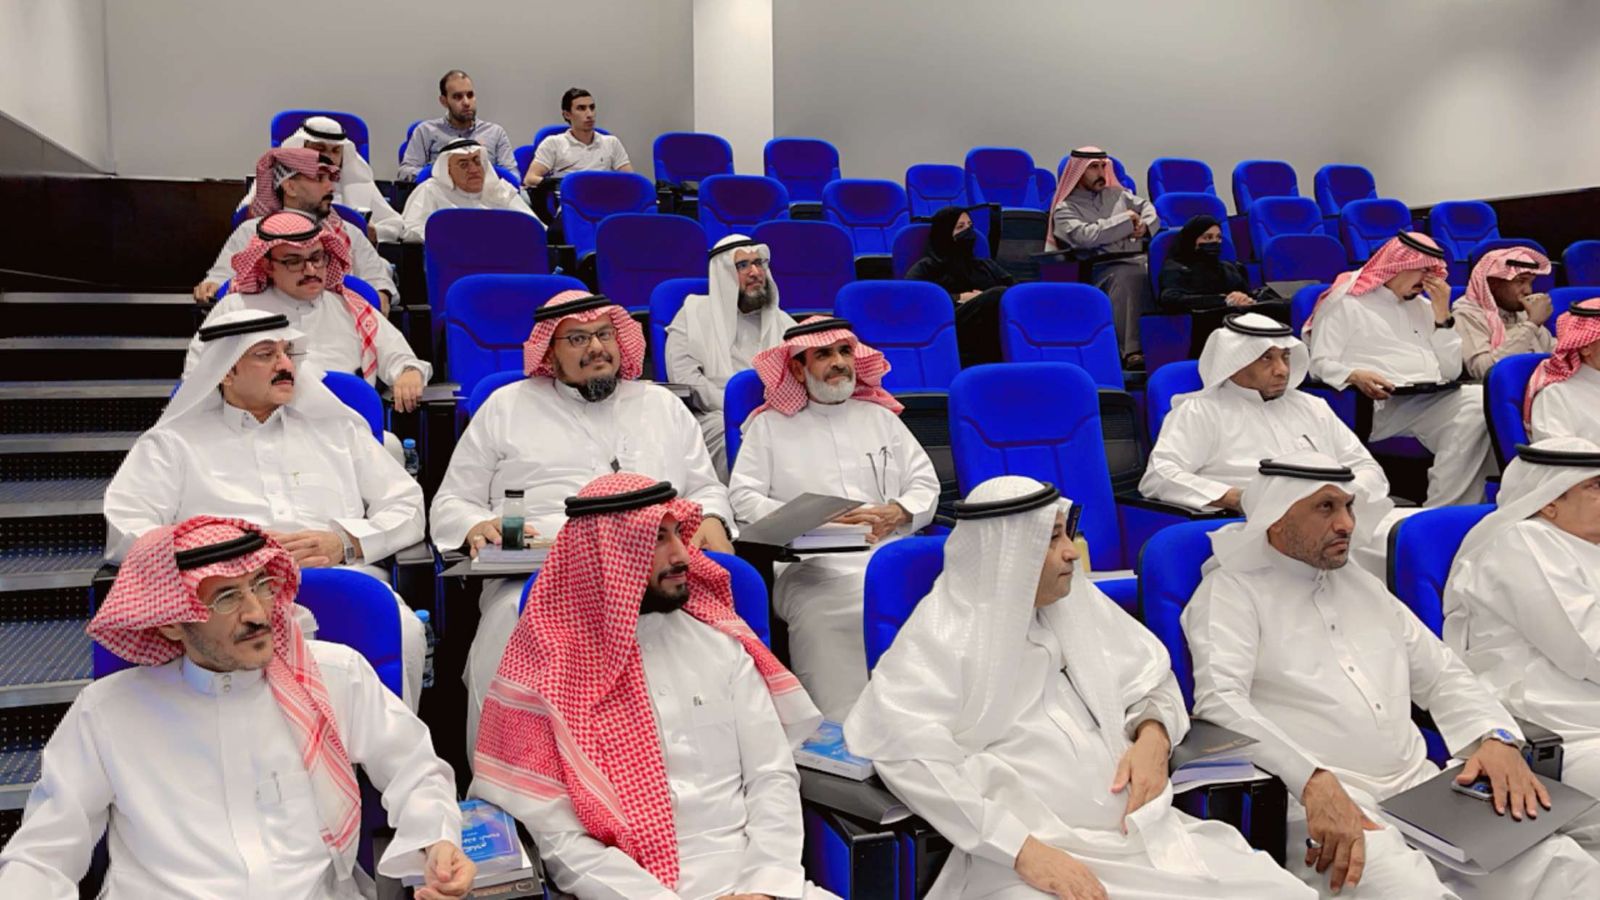 ١٠٤٠ متدرب في ١٩ دورة تدريب أقامتها هيئة الصحفيين السعوديين في شهر رمضان